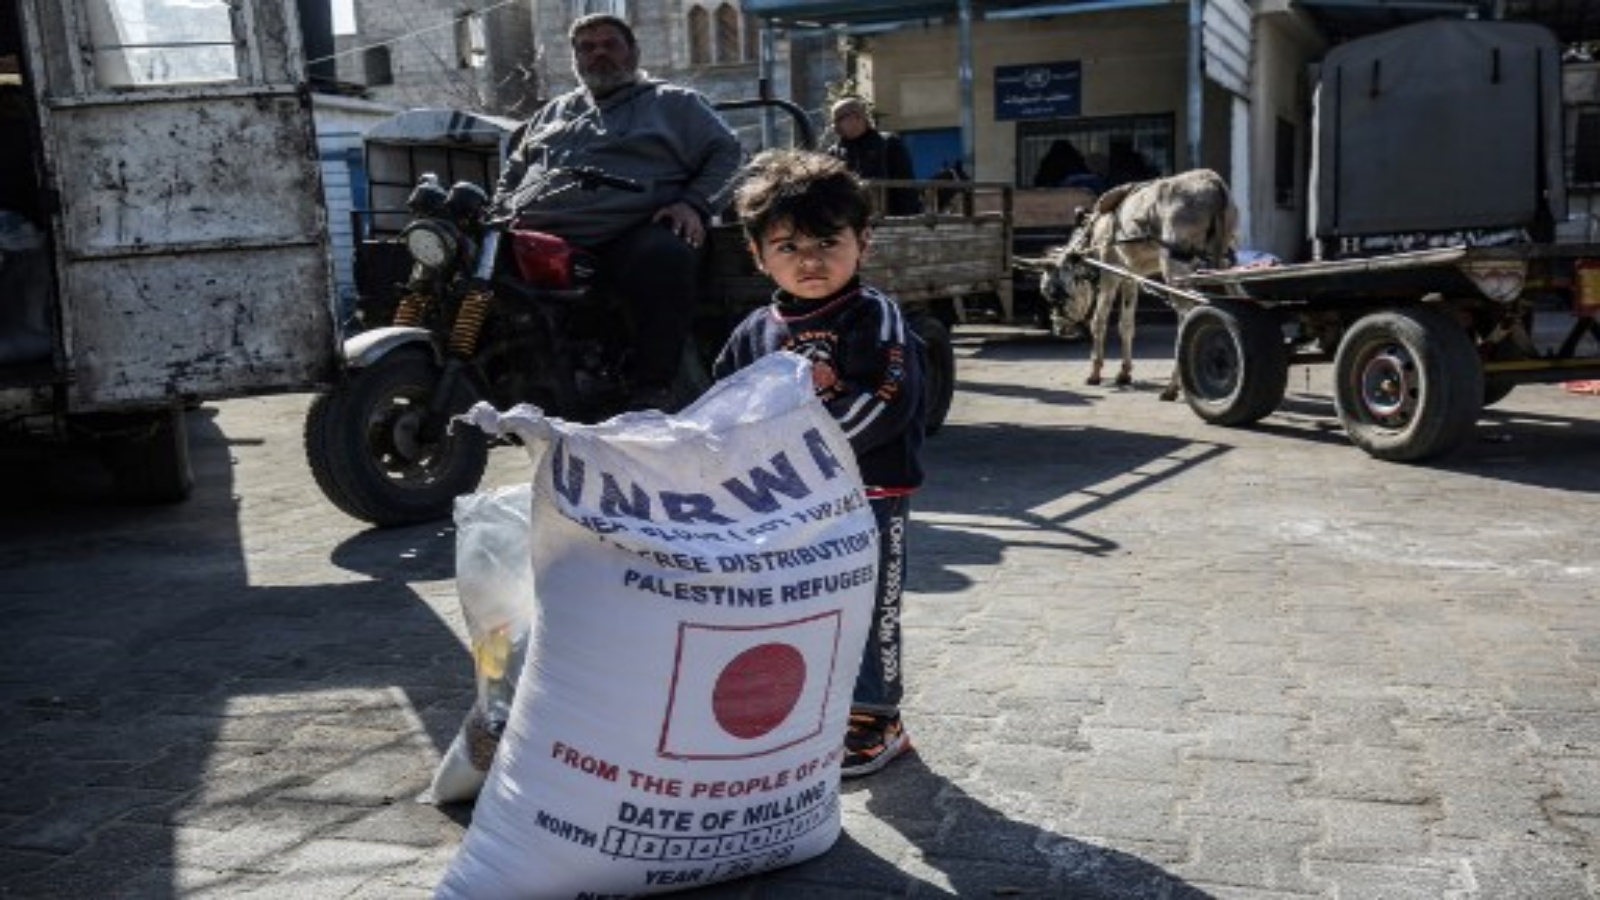 طفل يقف بجانب كيس دقيق بينما يأتي الناس لتلقي مساعدات غذائية من مركز توزيع تابع لوكالة غوث وتشغيل اللاجئين الفلسطينيين (الأونروا) في مخيم خان يونس للاجئين الفلسطينيين في جنوب غزة مطلع العام الحالي